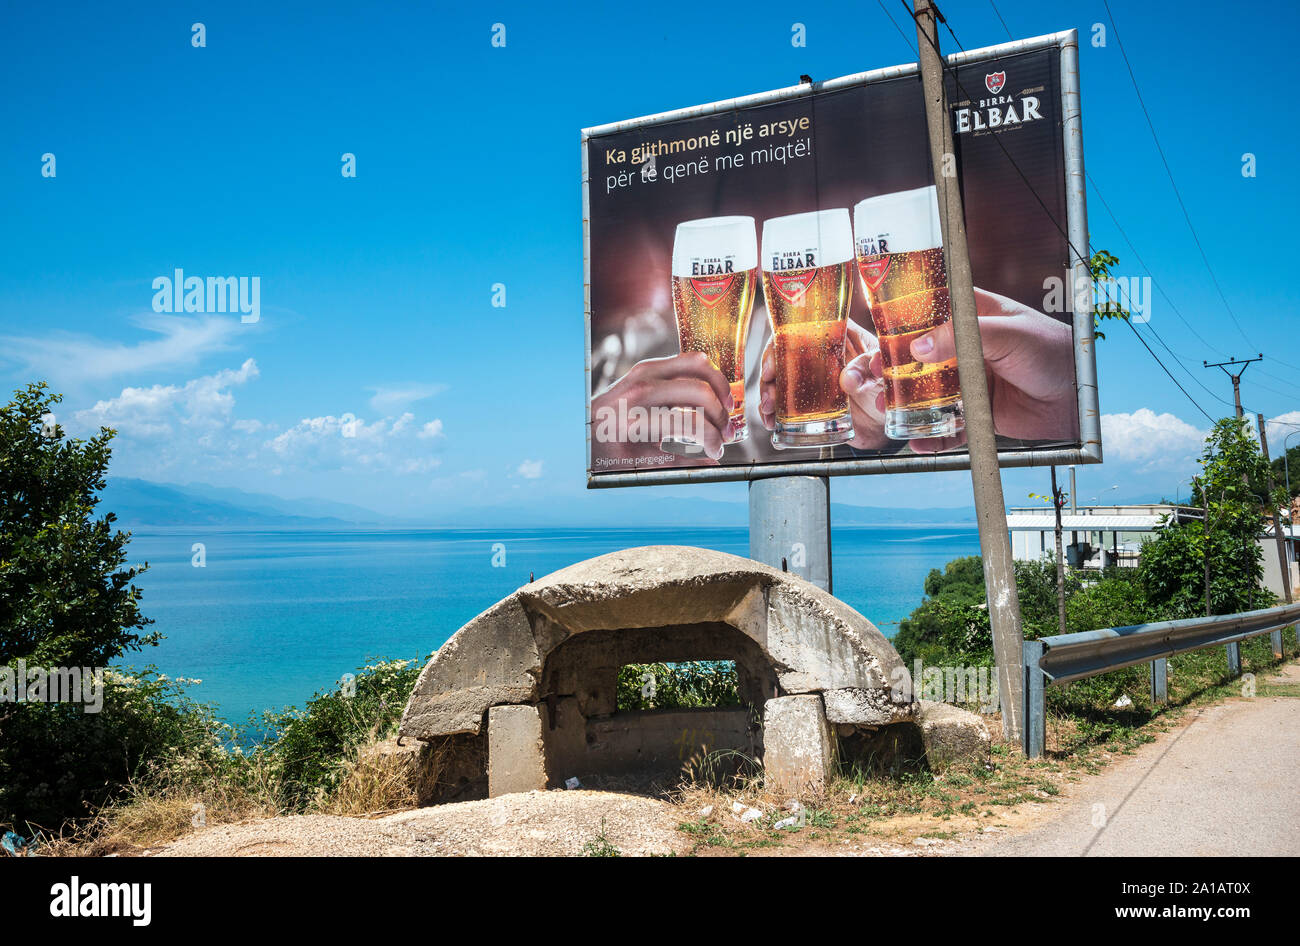 Période communiste abandonné casemate militaire et panneau publicitaire sur les rives du lac d'Ohrid à près de Tushemisht Pogradeci, sud-est de l'Albanie. Banque D'Images